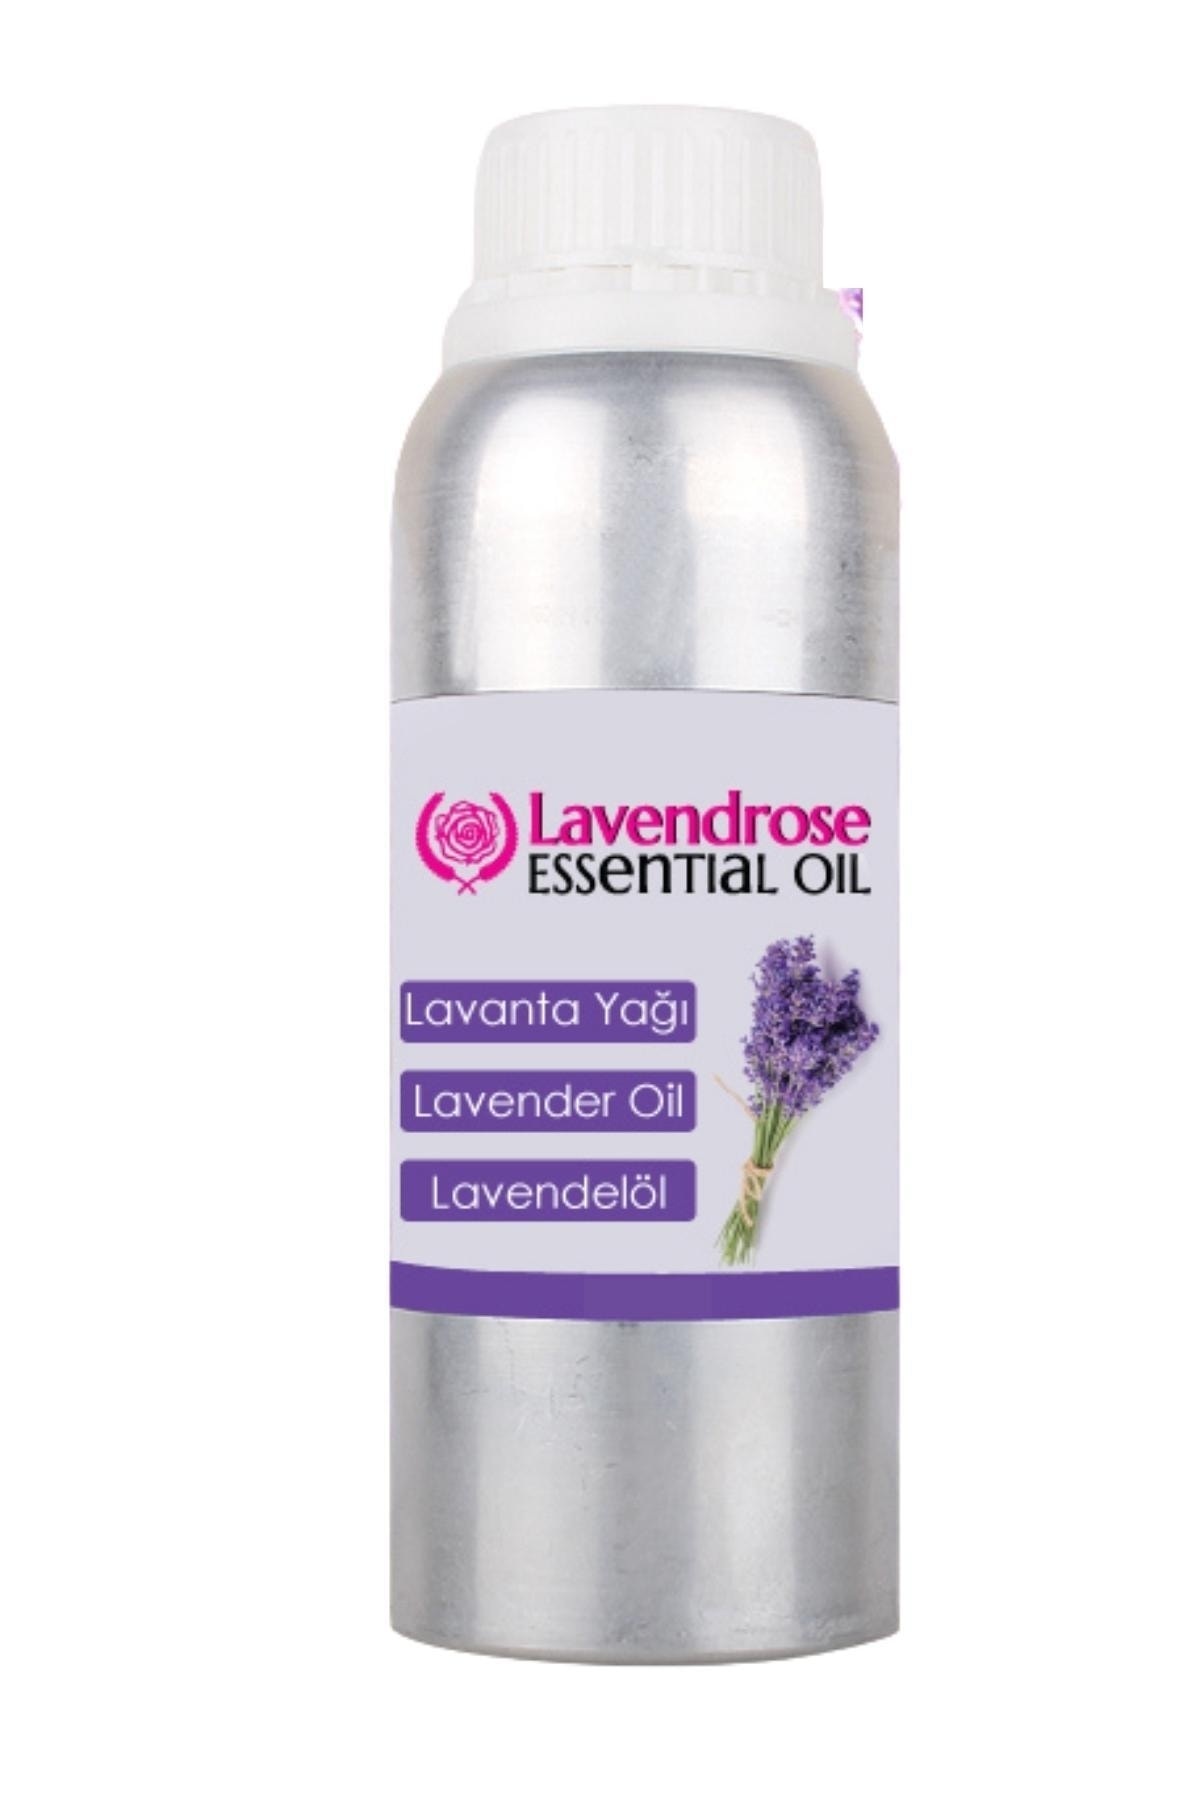 Lavendrose Lavanta Yağı 1 Litre - Lavender Oil 1 Lt - %100 Doğal Saf Uçucu Yağ